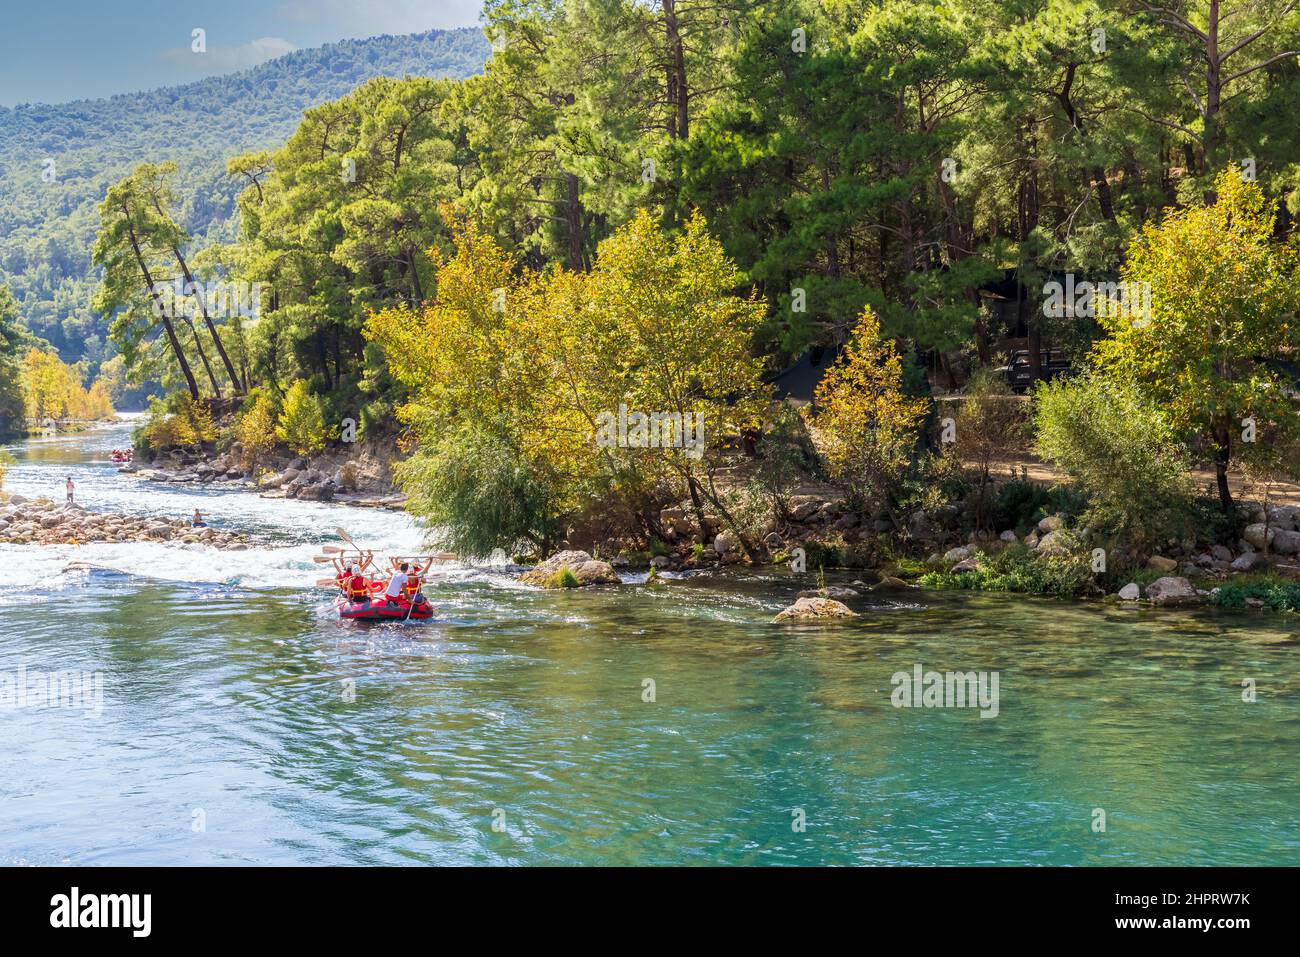 Esperienza di rafting sulle rapide del fiume Manavgat in Turchia. Foto Stock